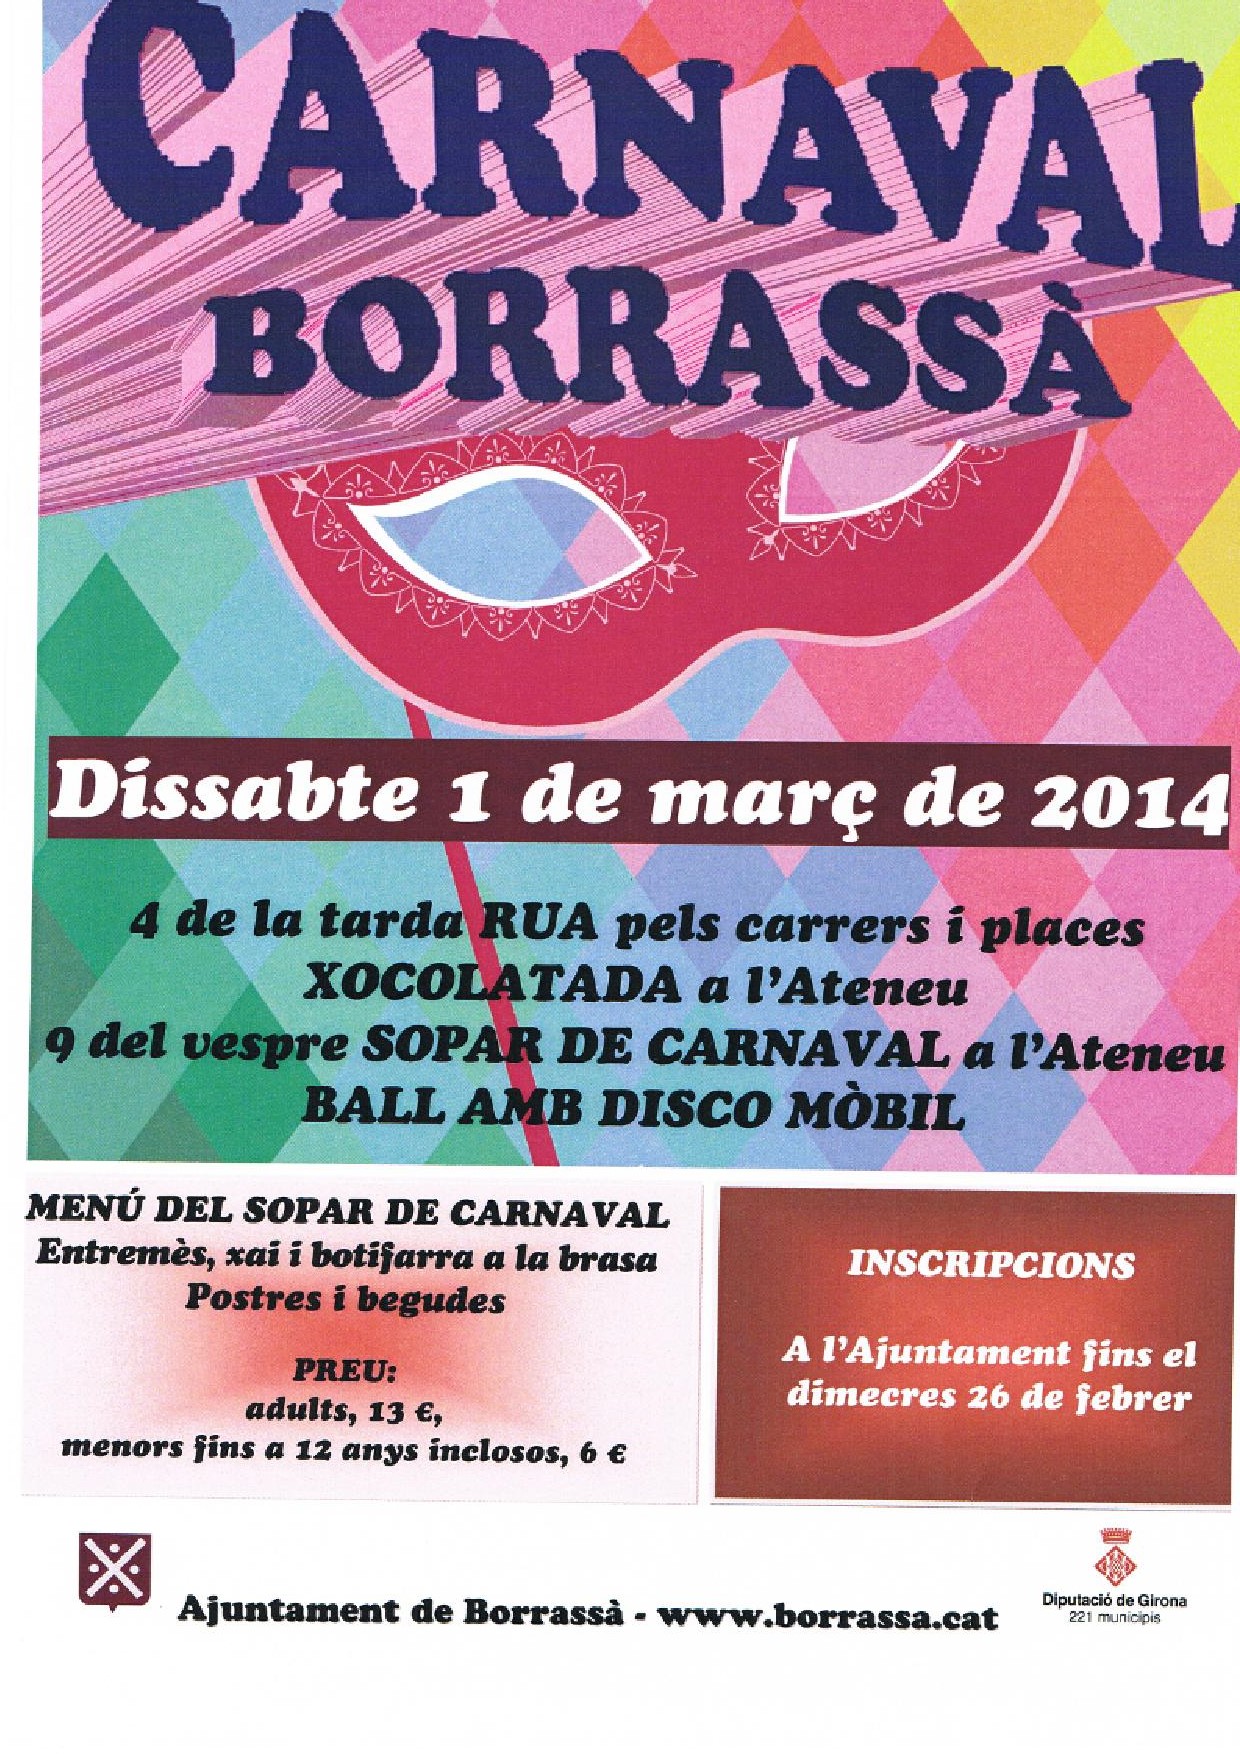 El Carnaval arriba aquest dissabte a Borrassà. Disfresses multicolors ompliran els carrers i places de color i alegria amb la rua. Després, els participants podran gaudir d'una bona xocolatada i, a partir de quarts de deu del vespre, uns 200 comensals compartiran el Sopar de Carnaval. La música i el ball amb disco mòbil posaran més gresca a la festa carnavalesca.